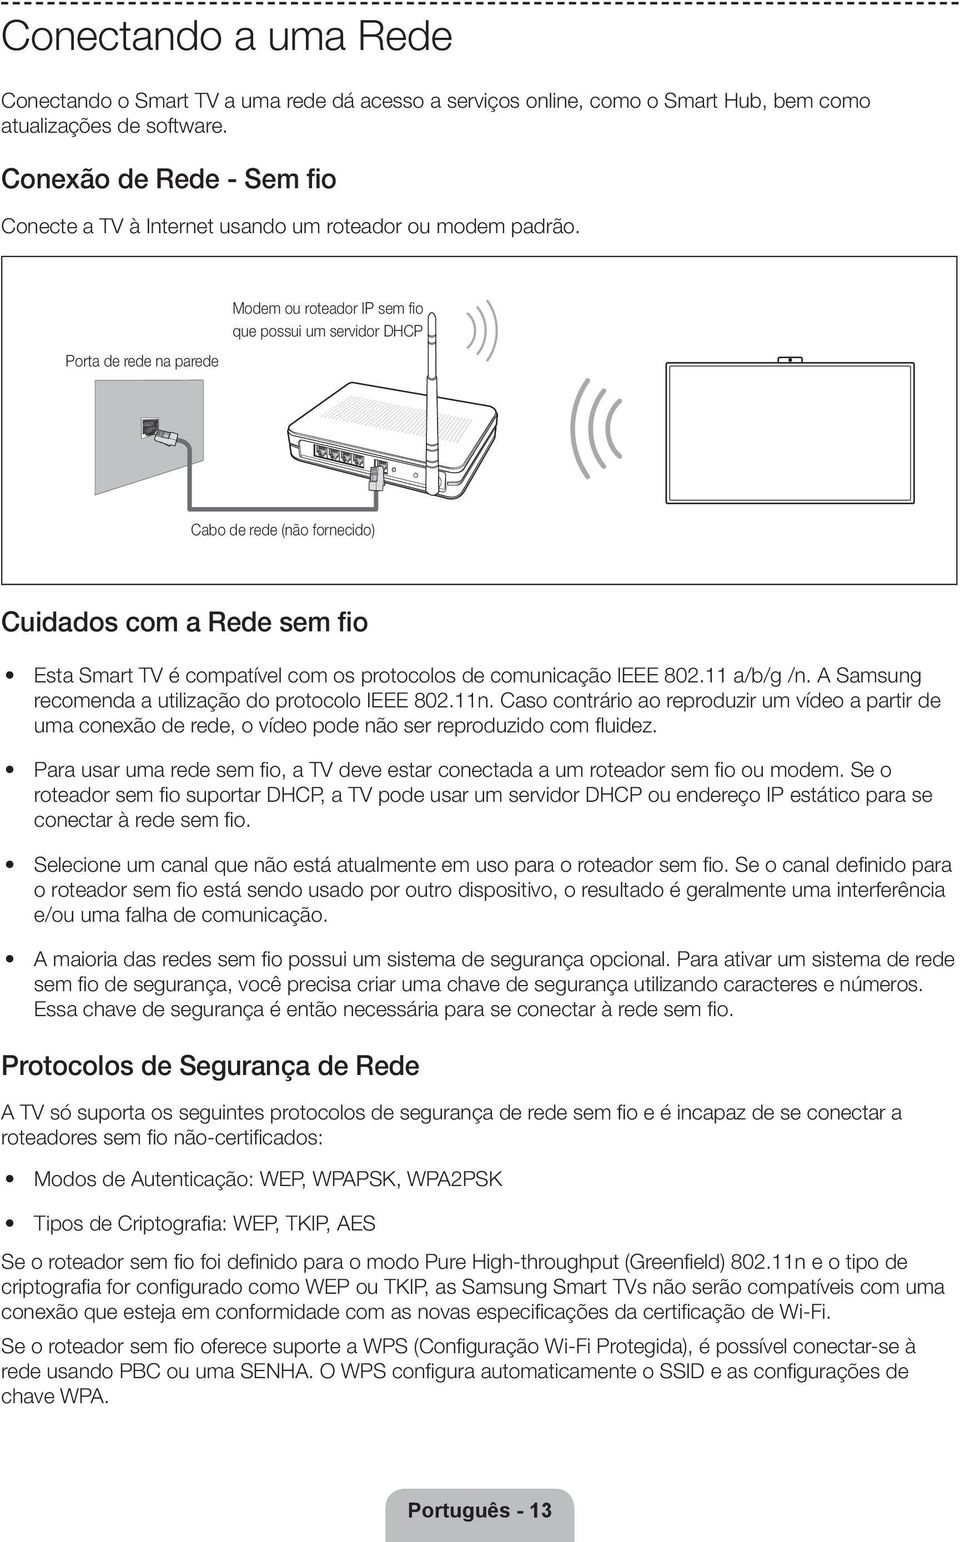 Porta de rede na parede Modem ou roteador IP sem fio que possui um servidor DHCP Cabo de rede (não fornecido) Cuidados com a Rede sem fio Esta Smart TV é compatível com os protocolos de comunicação